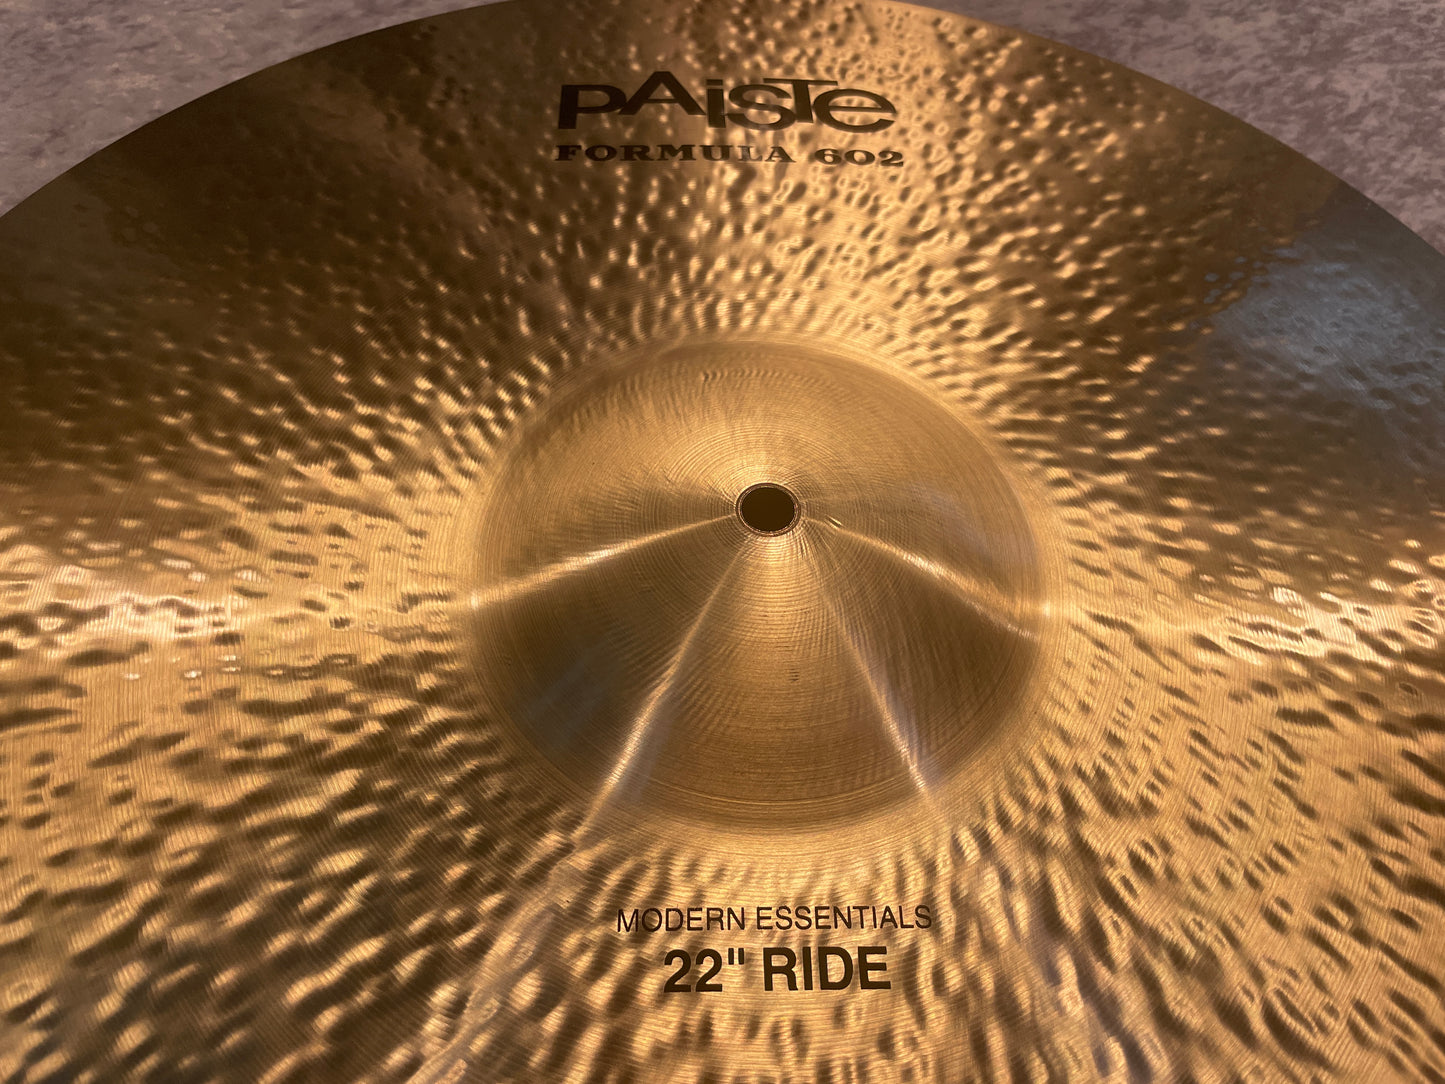 22" Paiste Formula 602 Modern Essentials Ride Cymbal 3040g